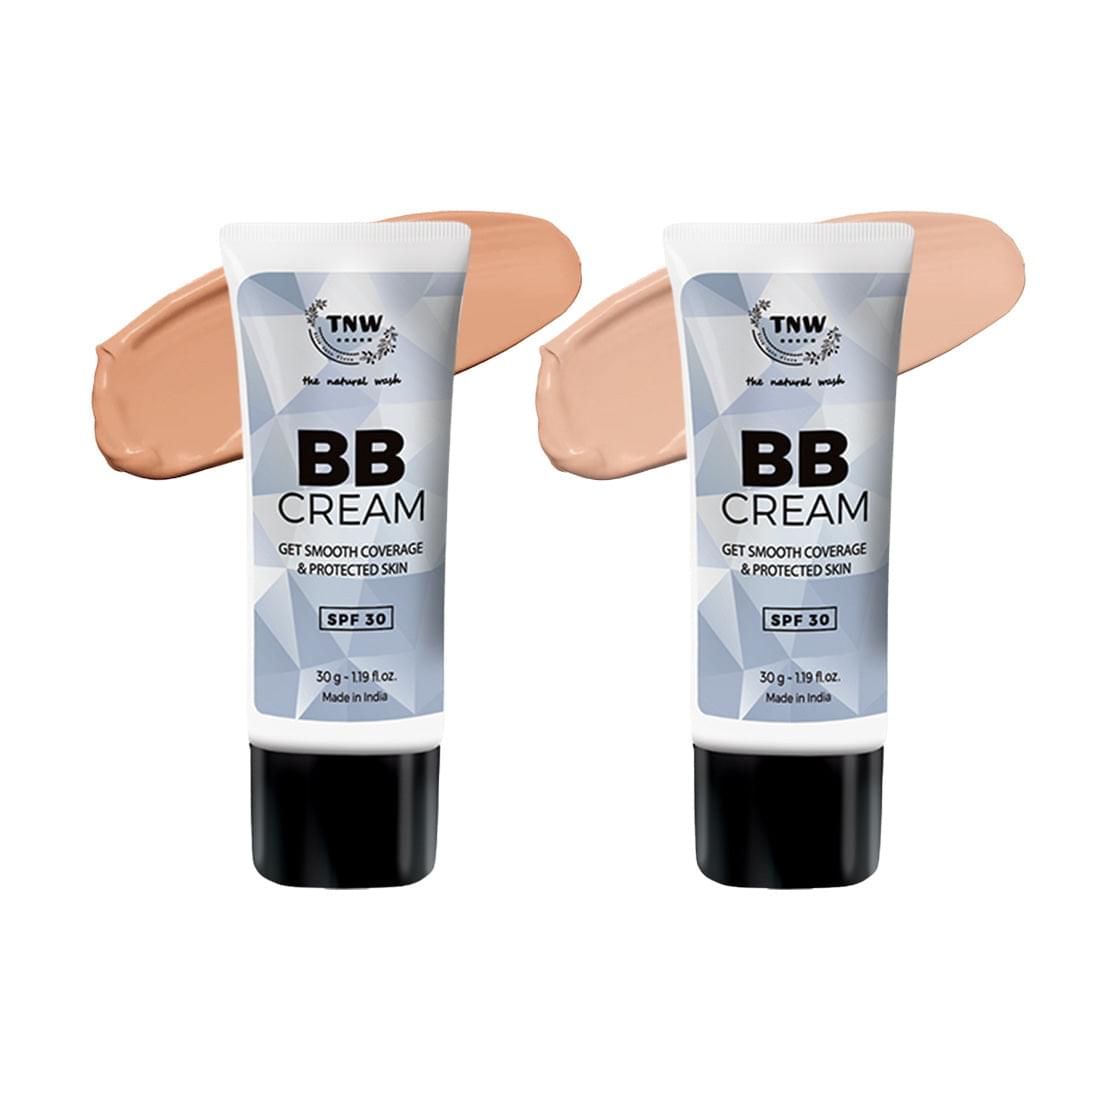 BB Cream - With SPF 30 (Ayurvedic & Paraben-Free)